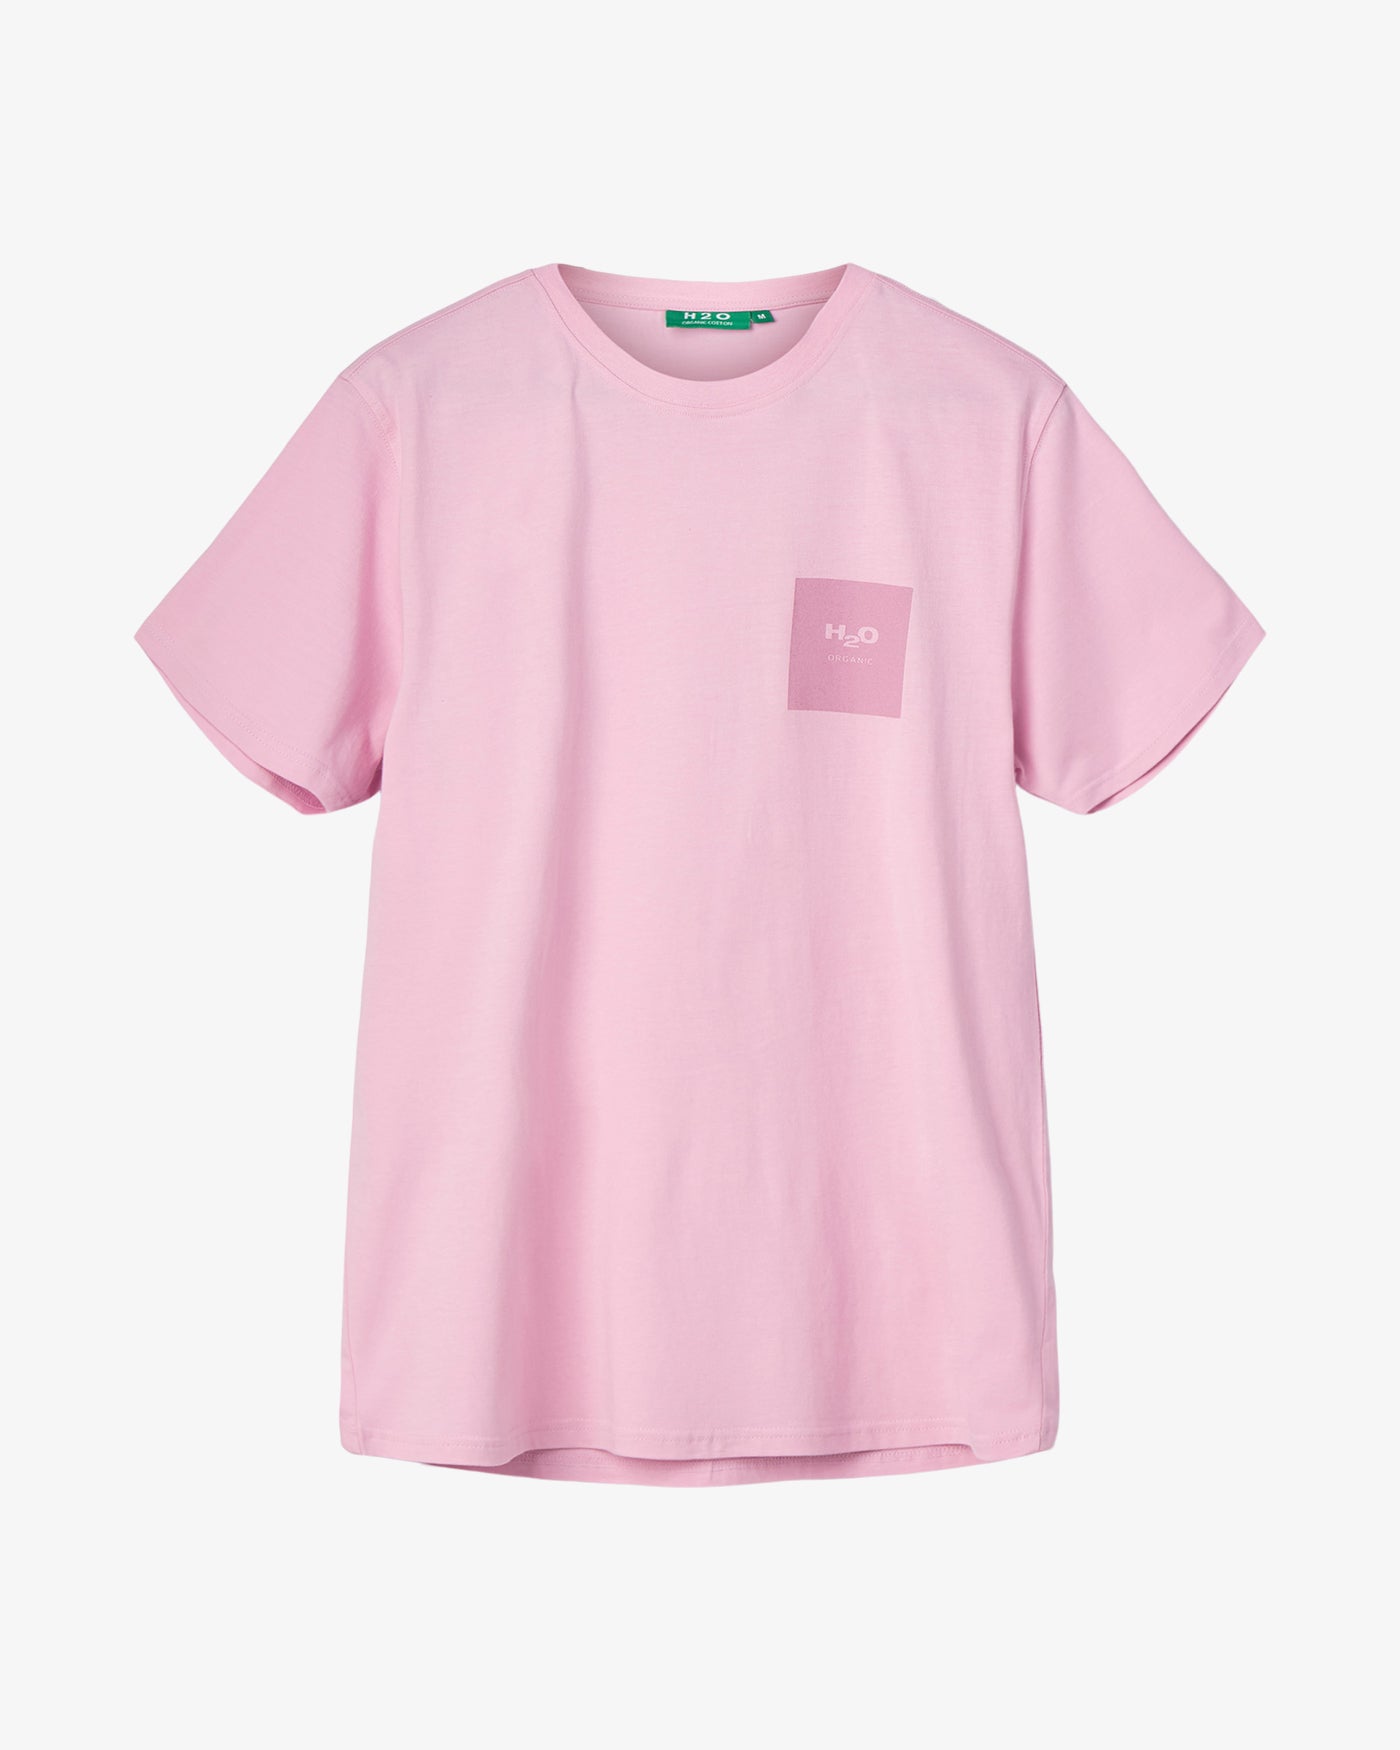 Lyø Organic T-shirt - Pink Lavender